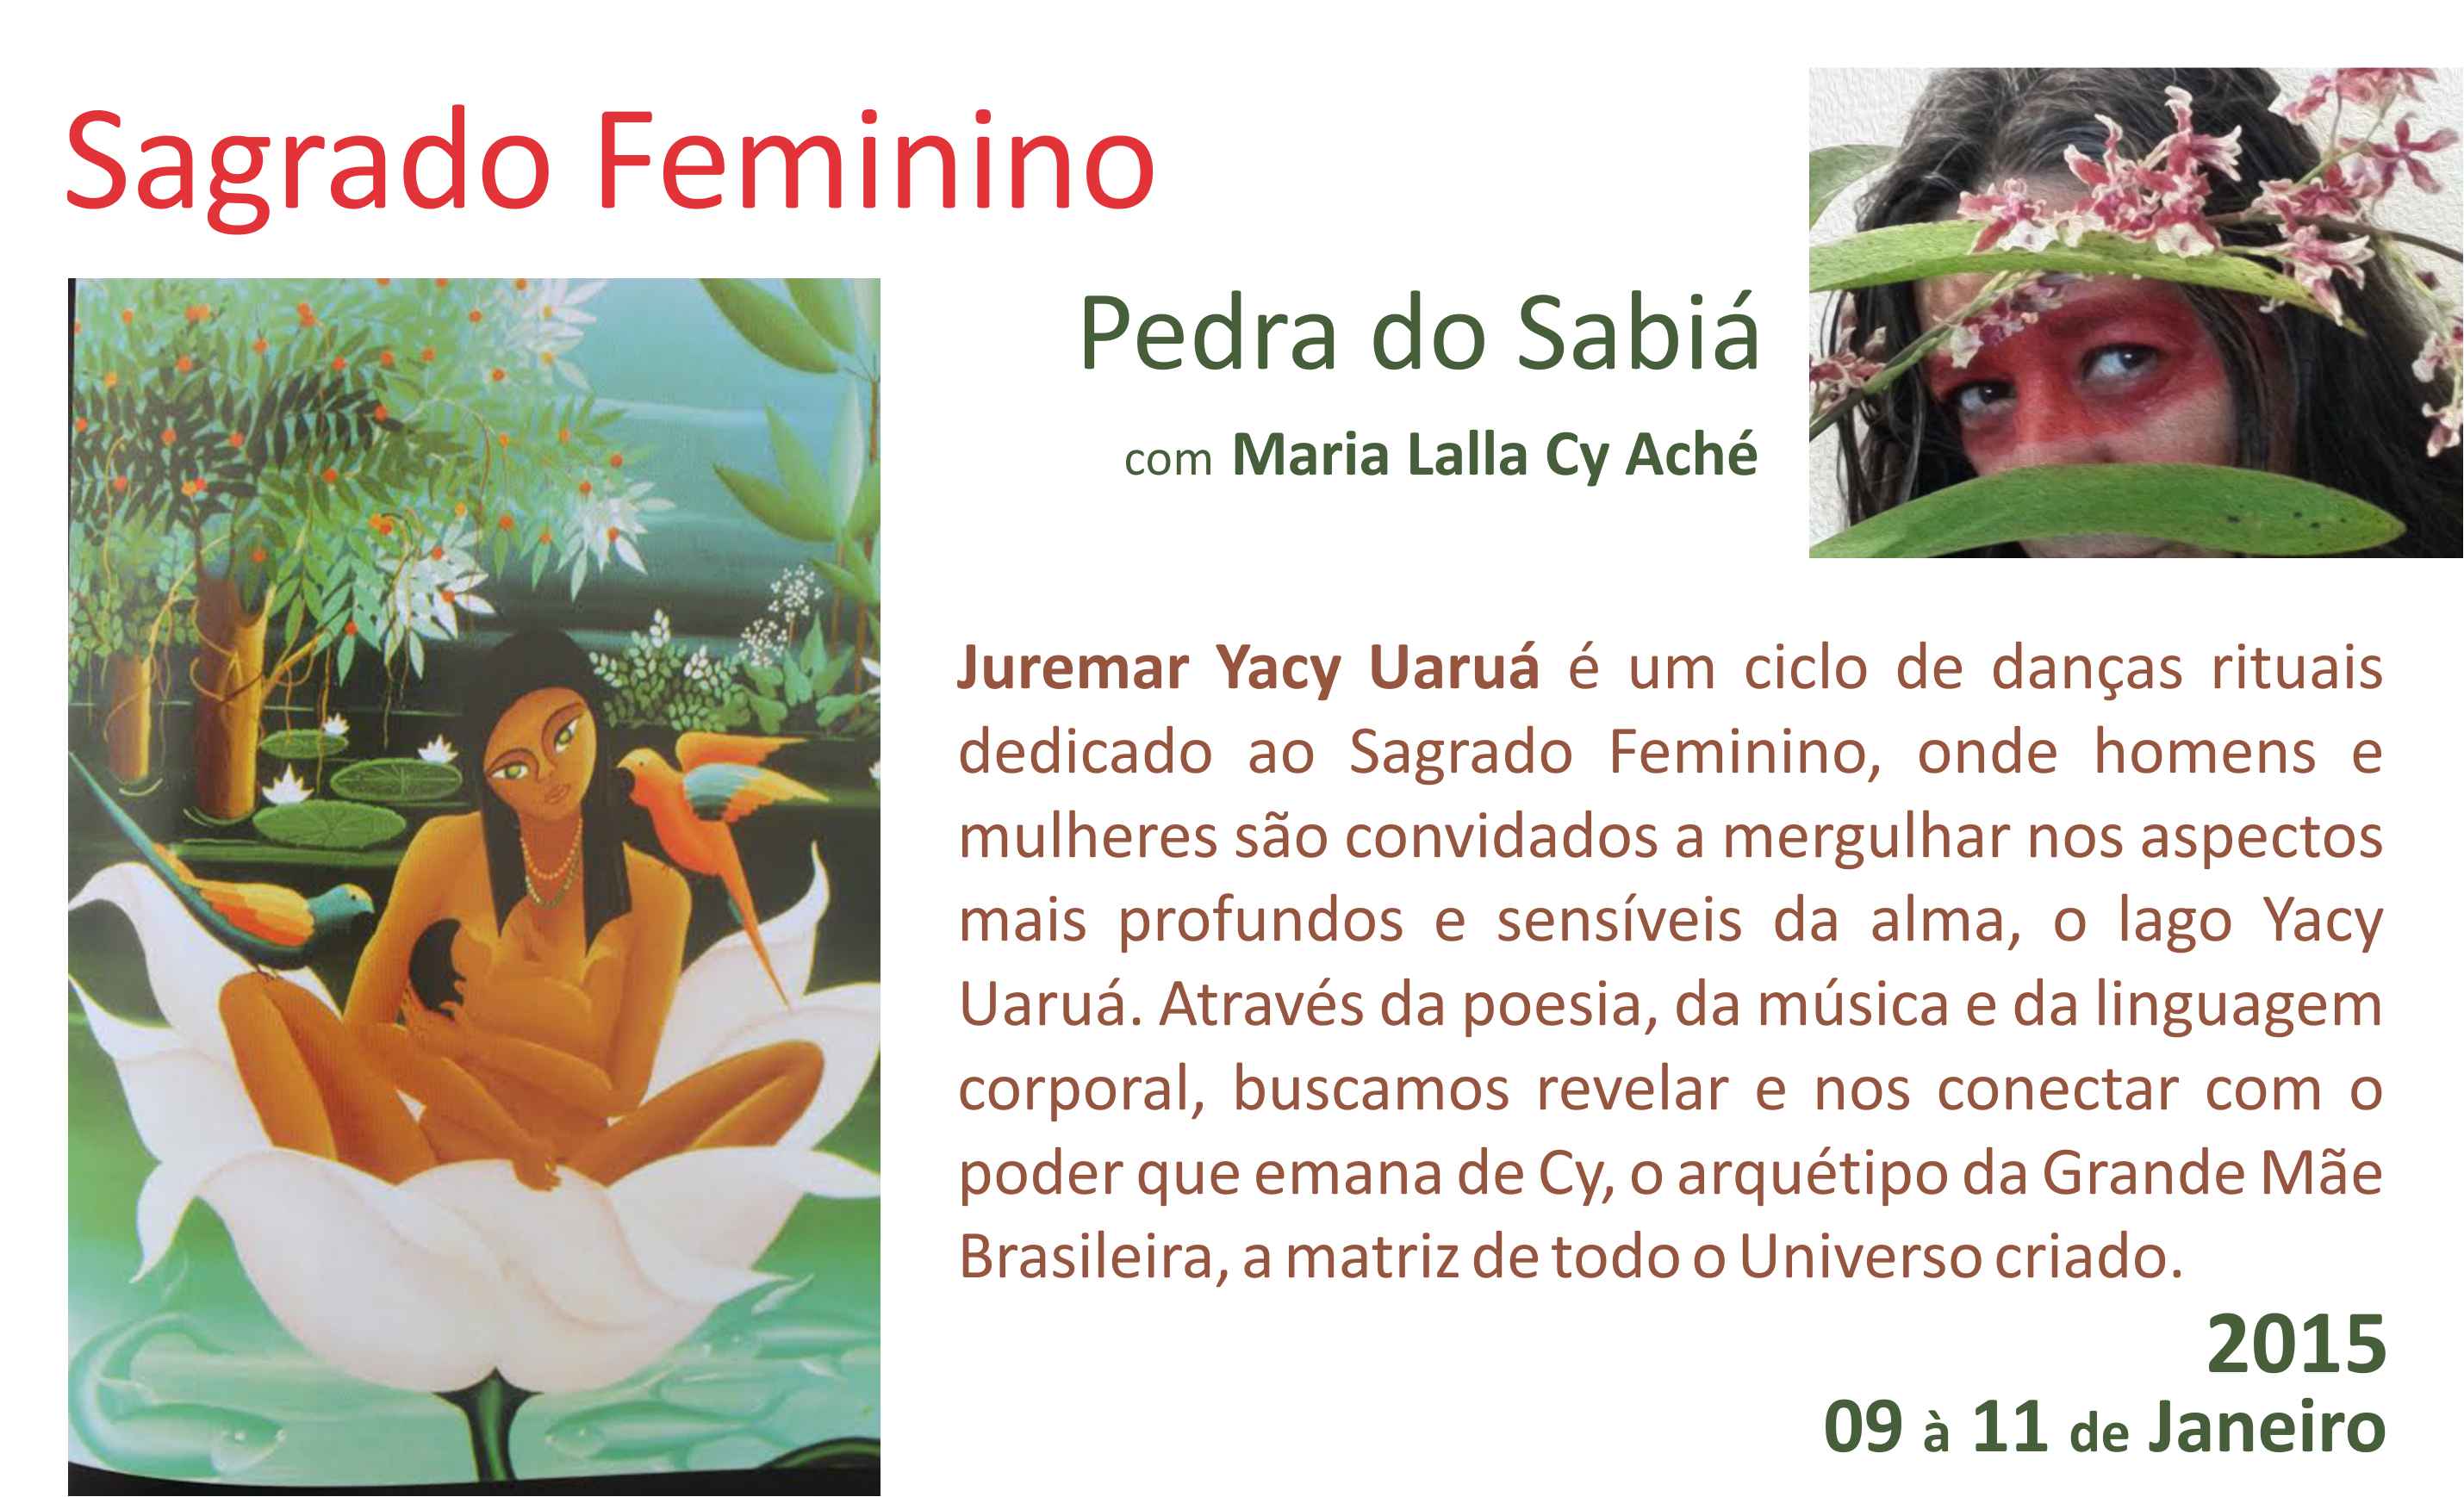 (Português) Sagrado Feminino